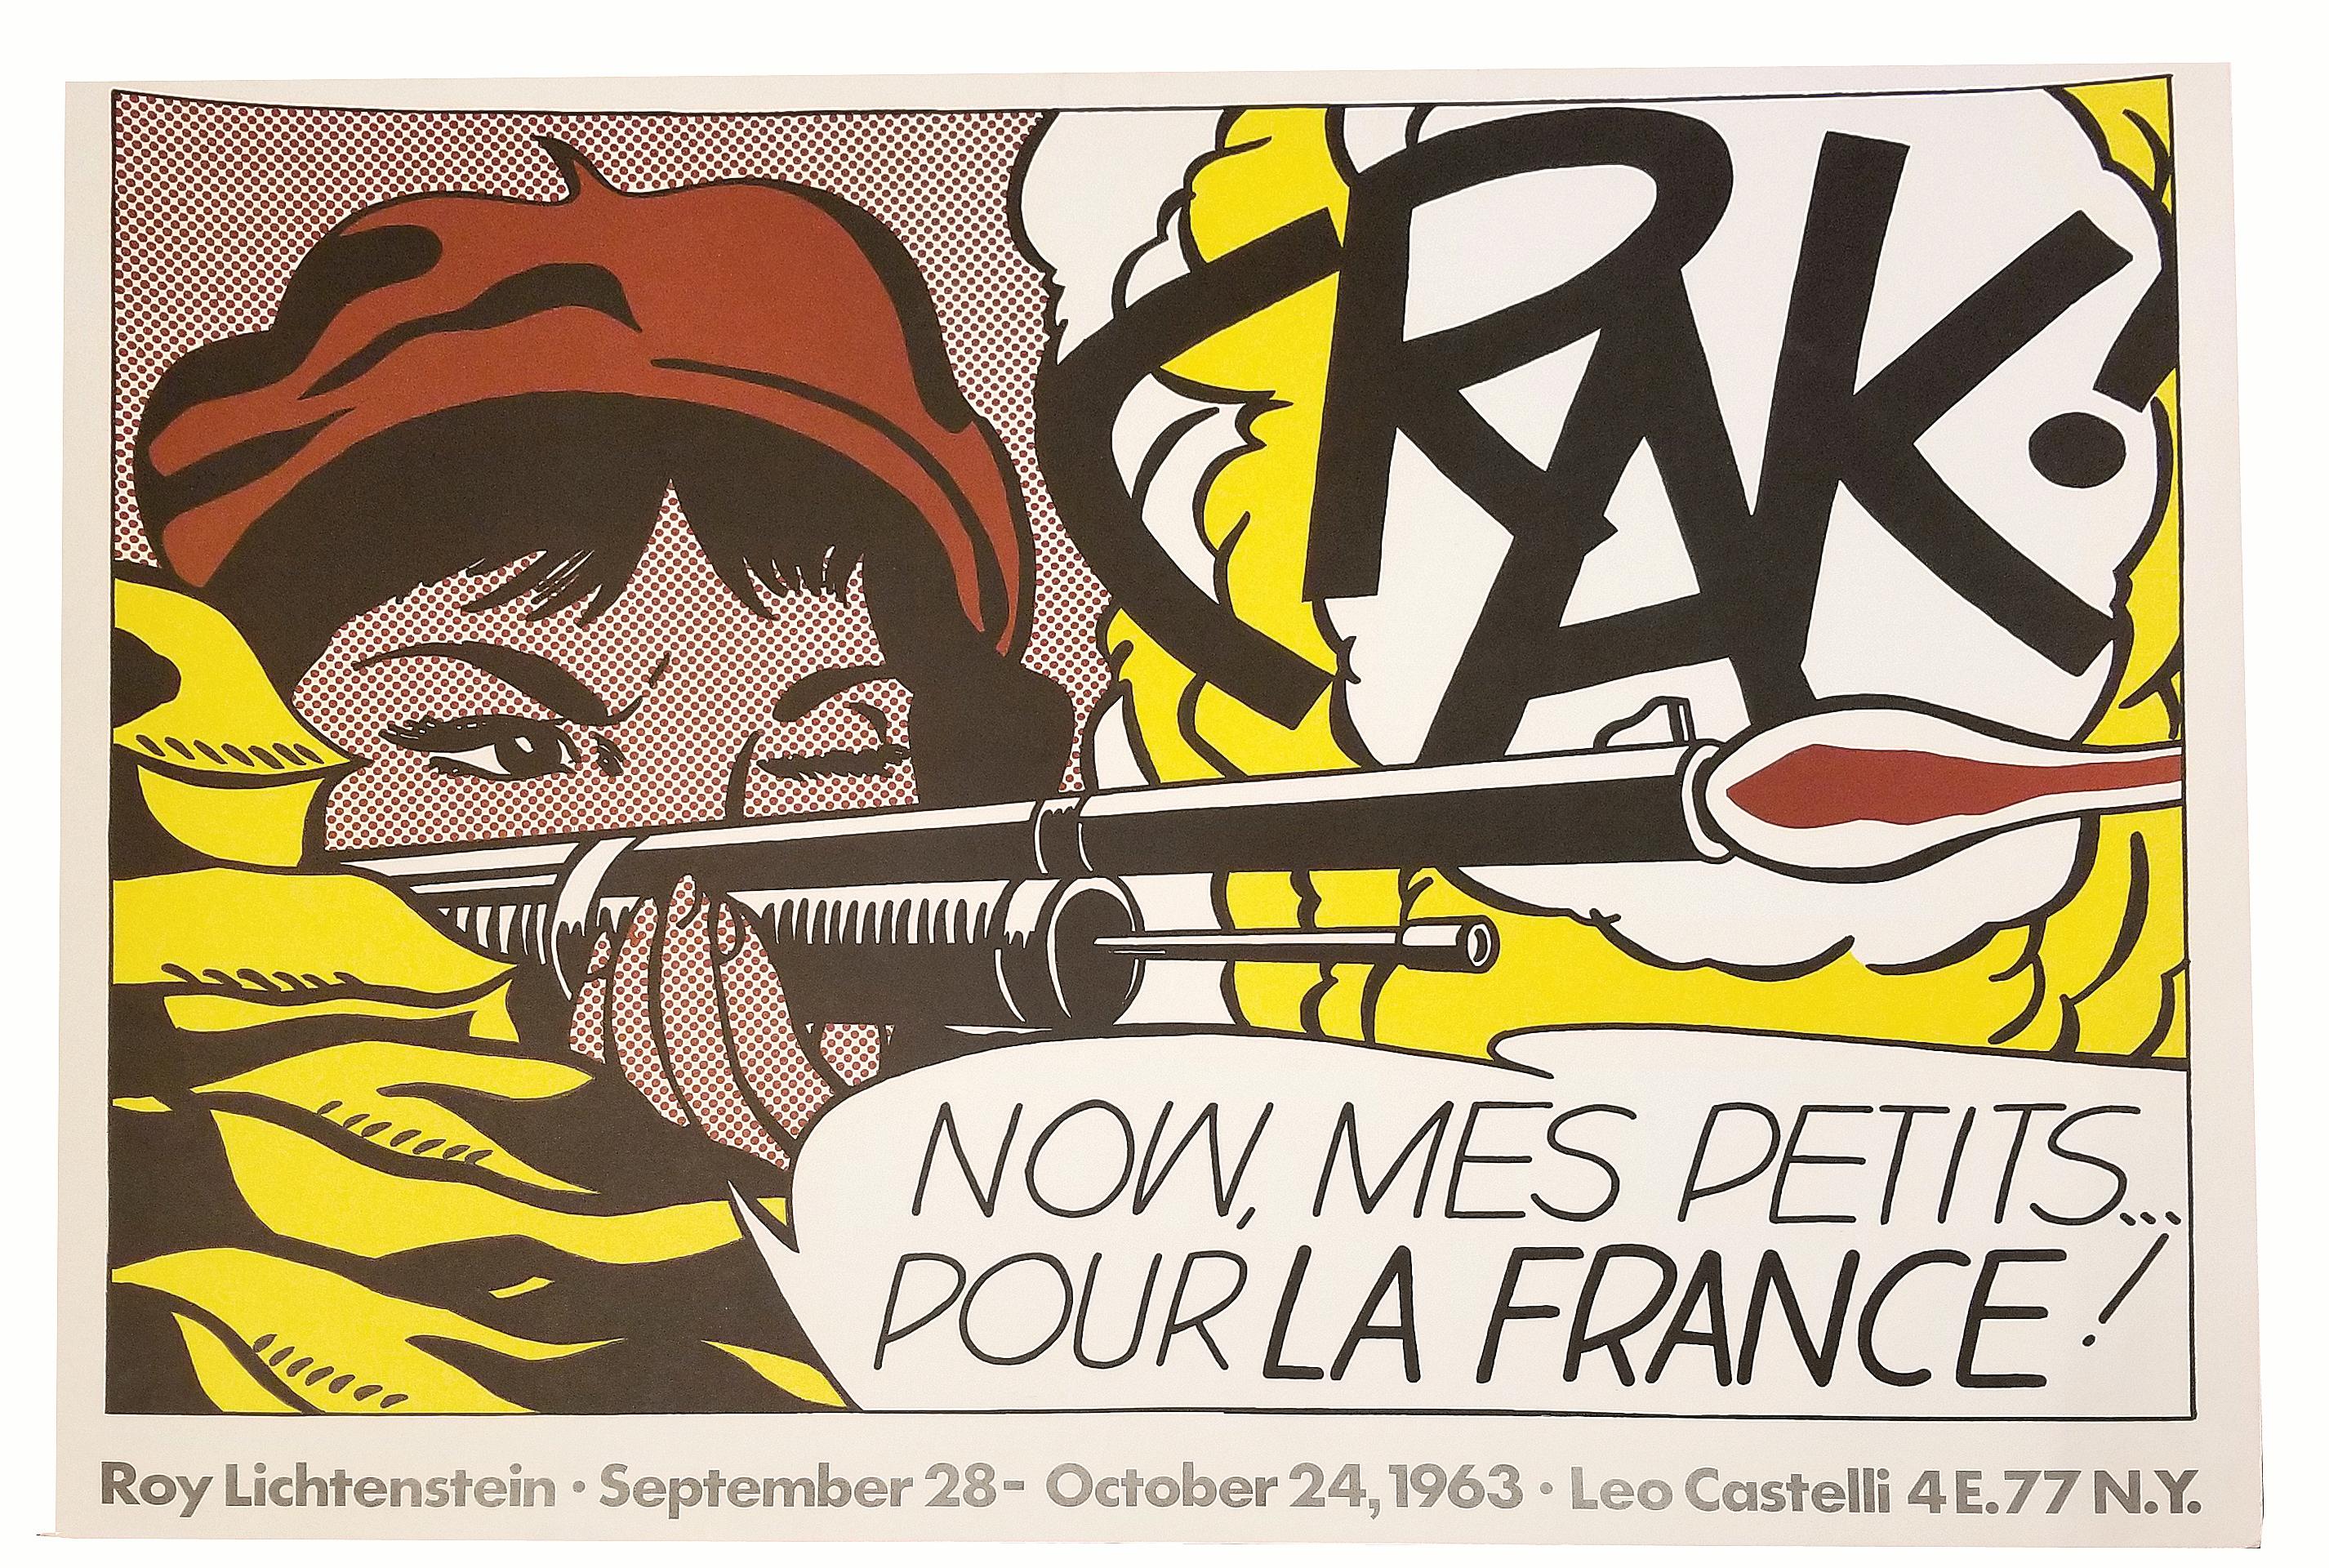 CRAK! Now, Mes Petits... Pour La France!             - Print by (after) Roy Lichtenstein